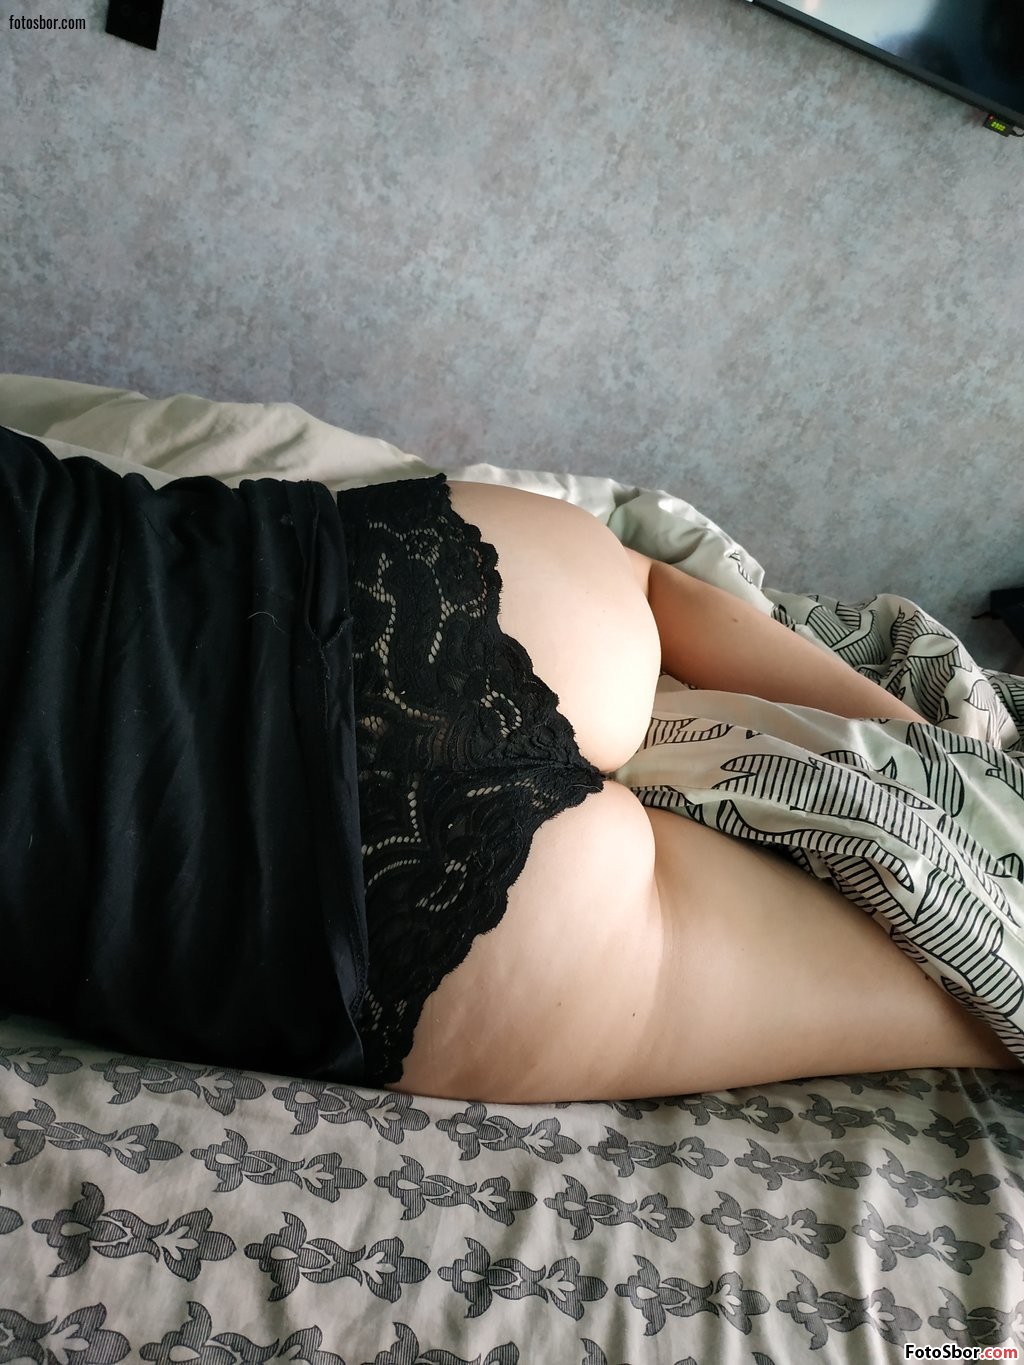 Порно фото Пьяная толстуха спит в трусах смотреть бесплатно